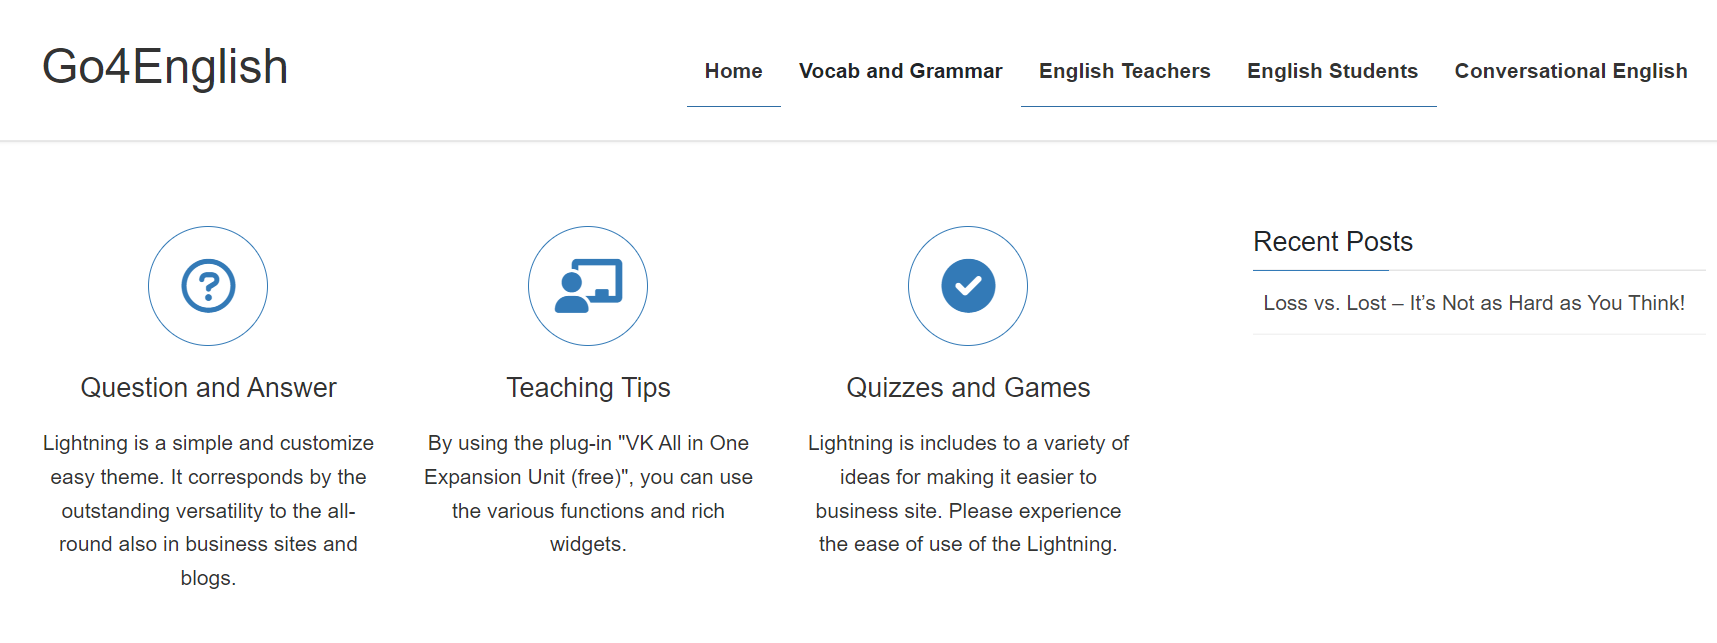 GEARVN - Trang web học tiếng Anh miễn phí Go4English